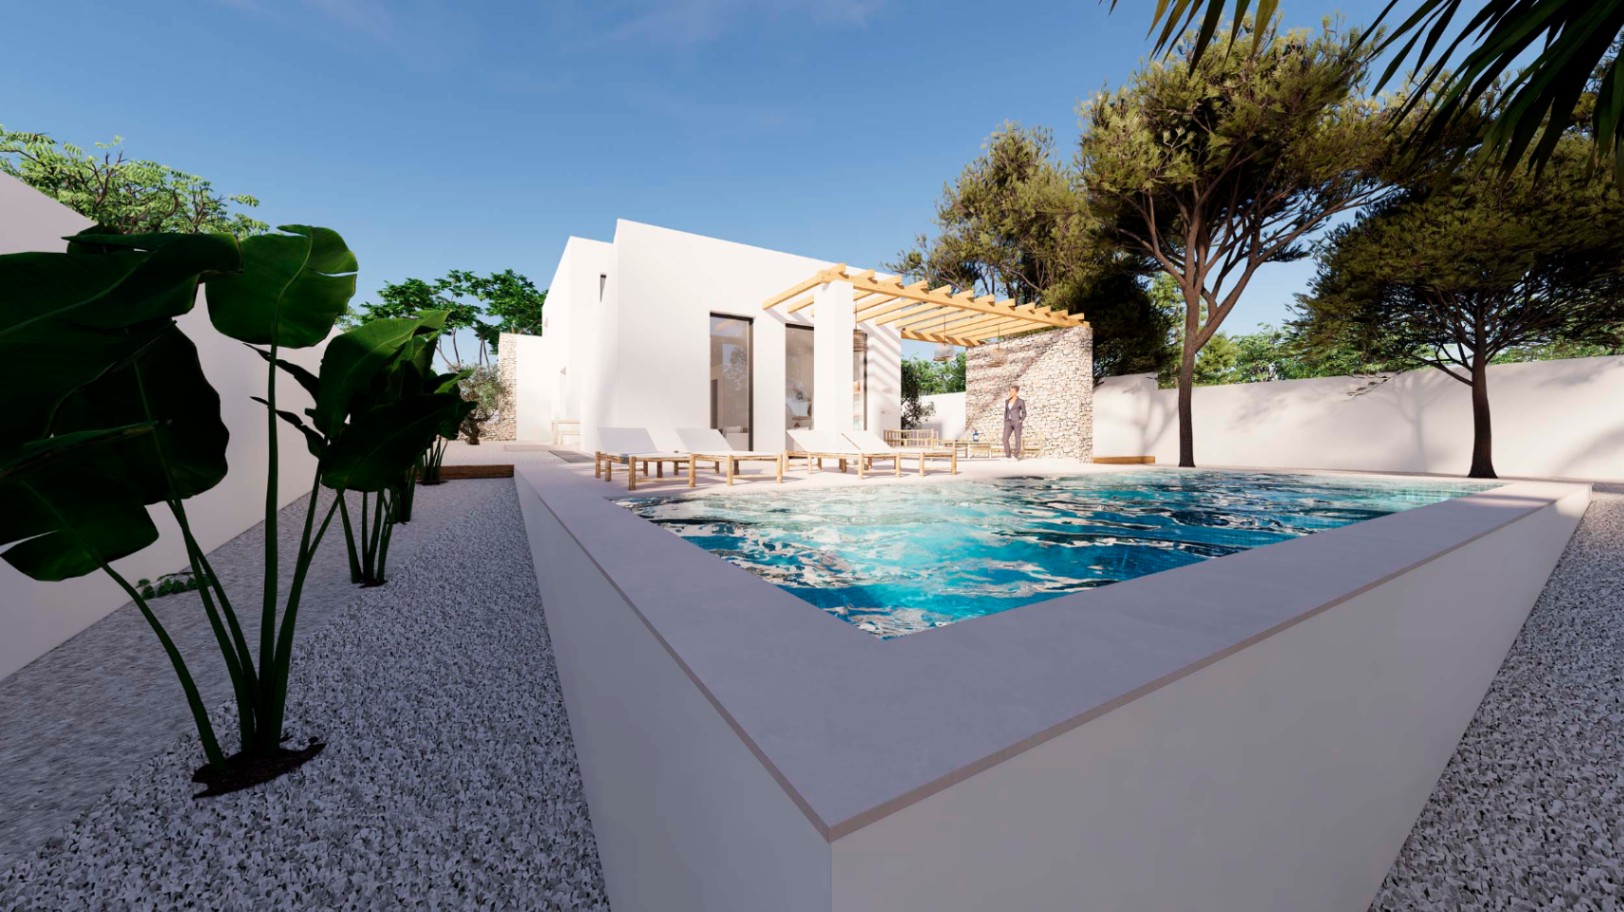 Nieuwbouw Ibiza-stijl villa te koop in Moraira